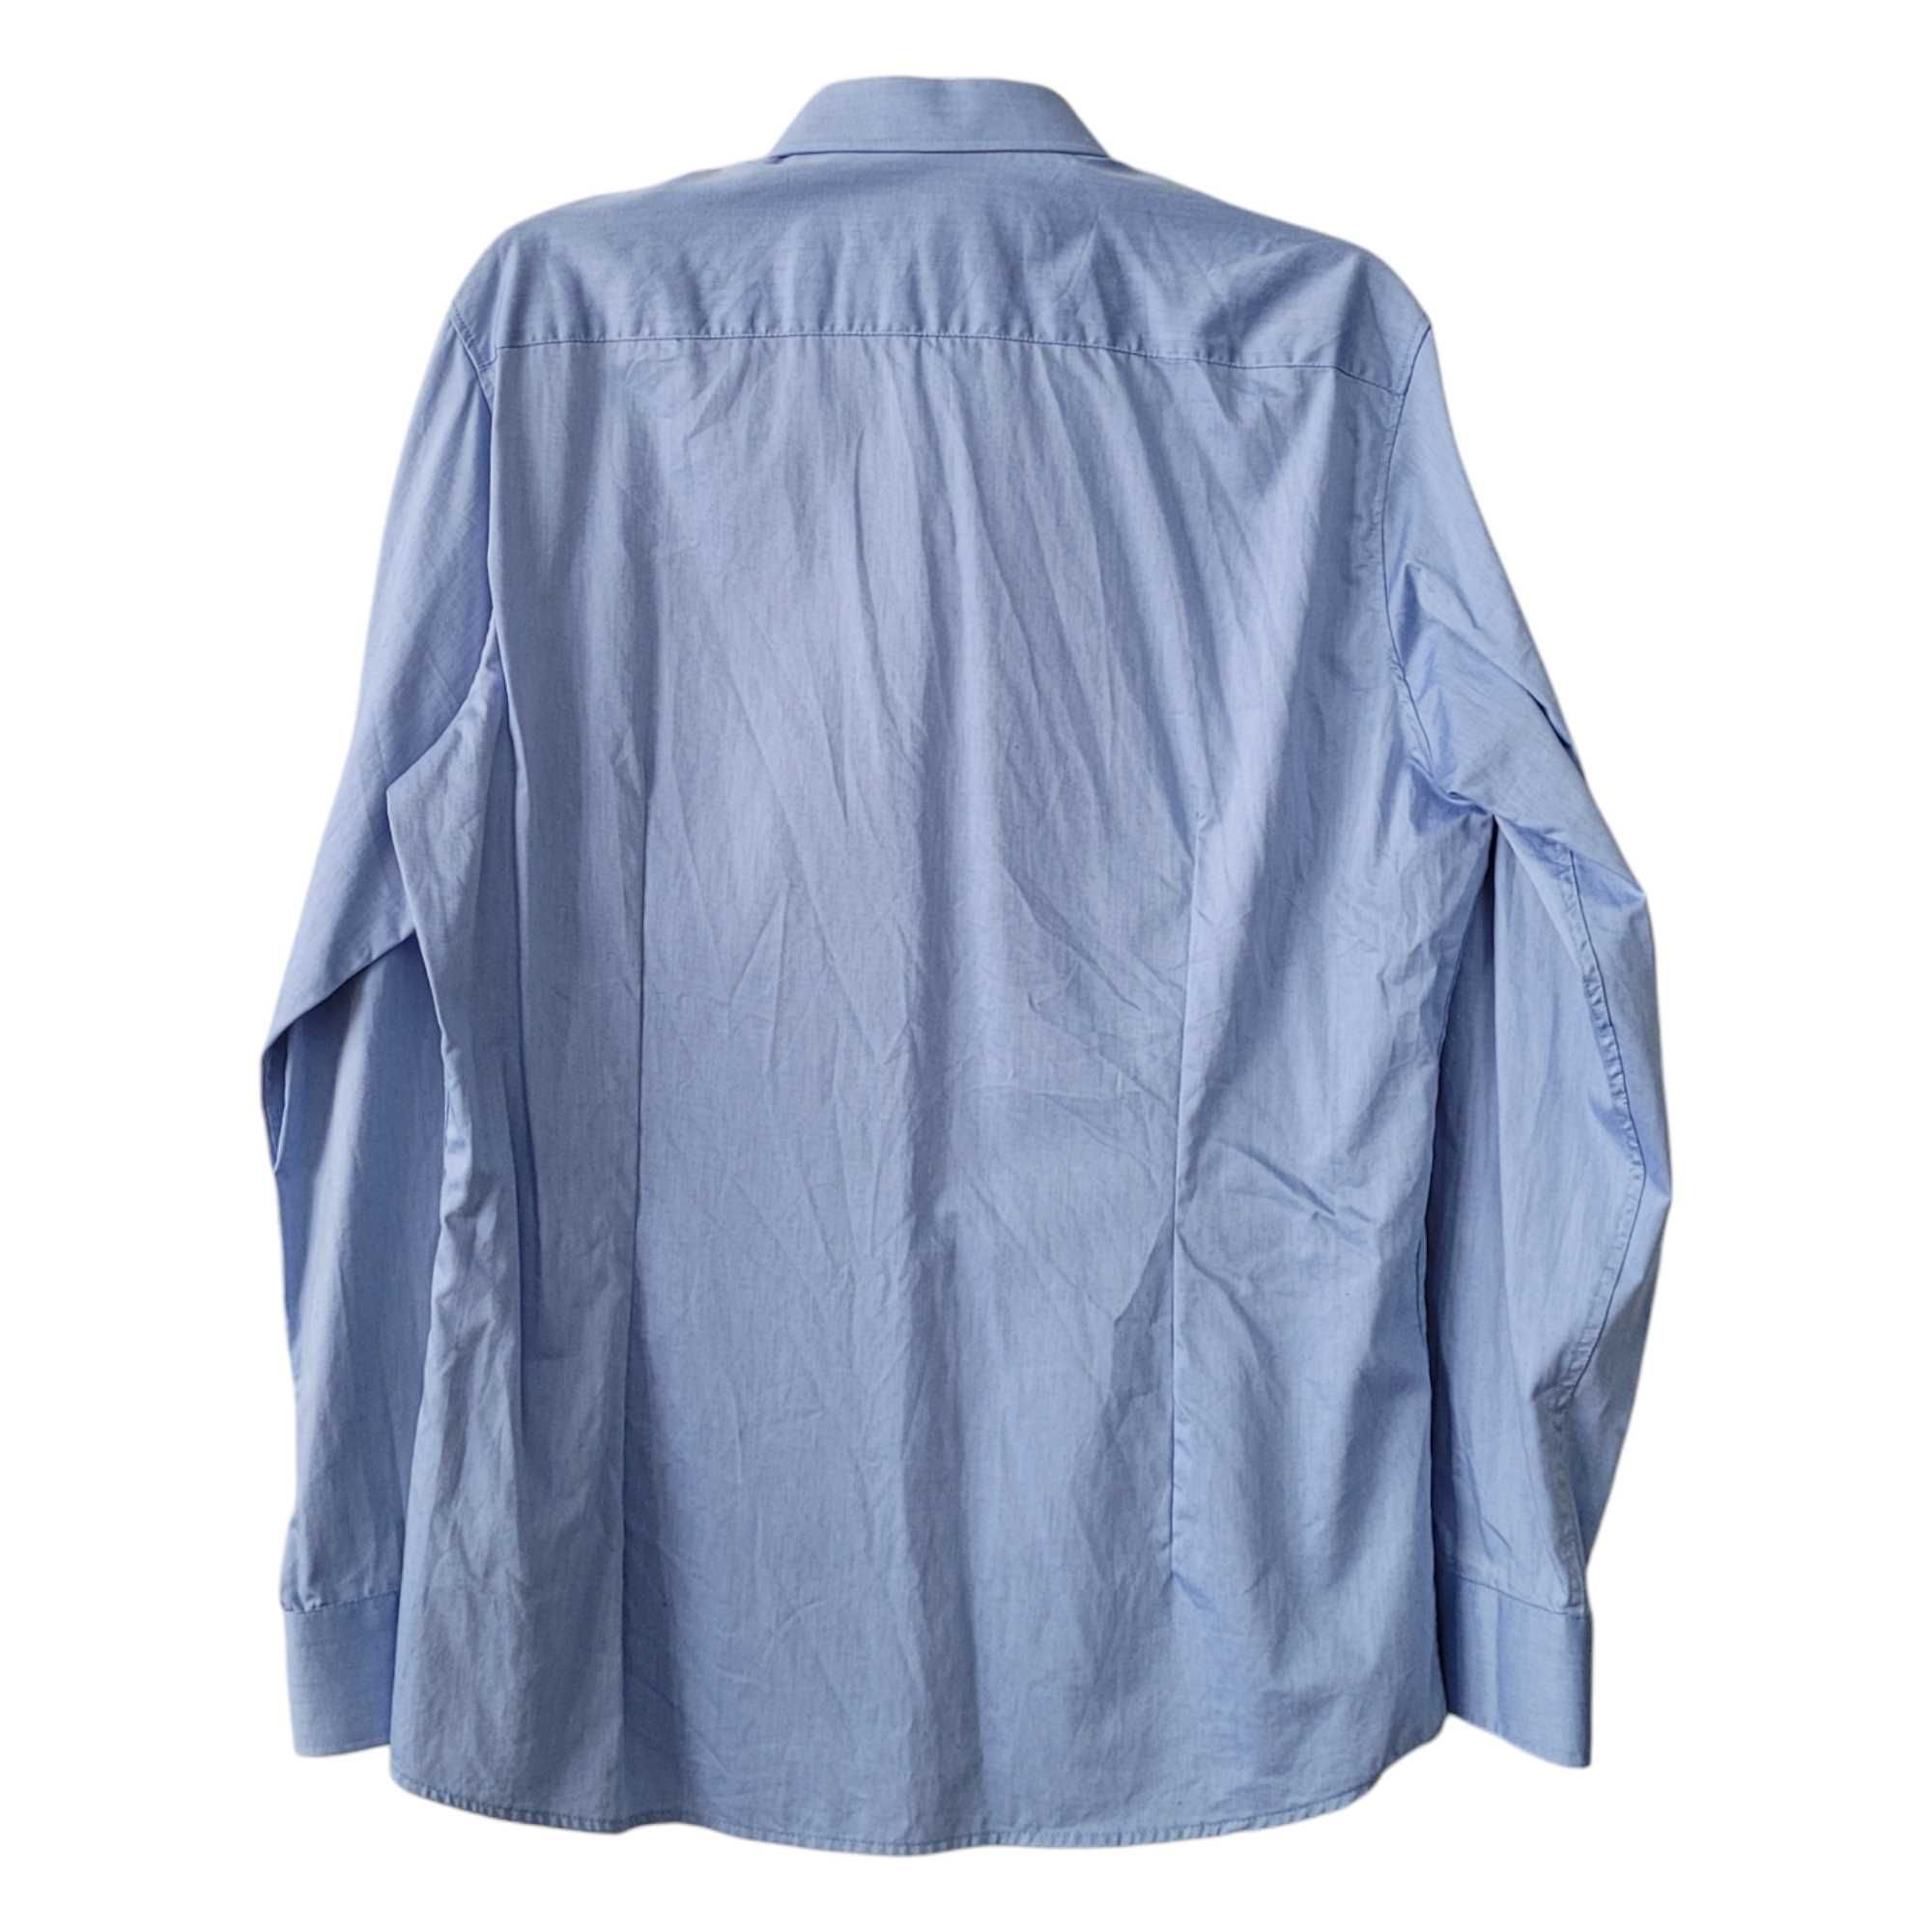 Niebieska koszula męska długi rękaw elegancka XL 42 slim fit bawełna